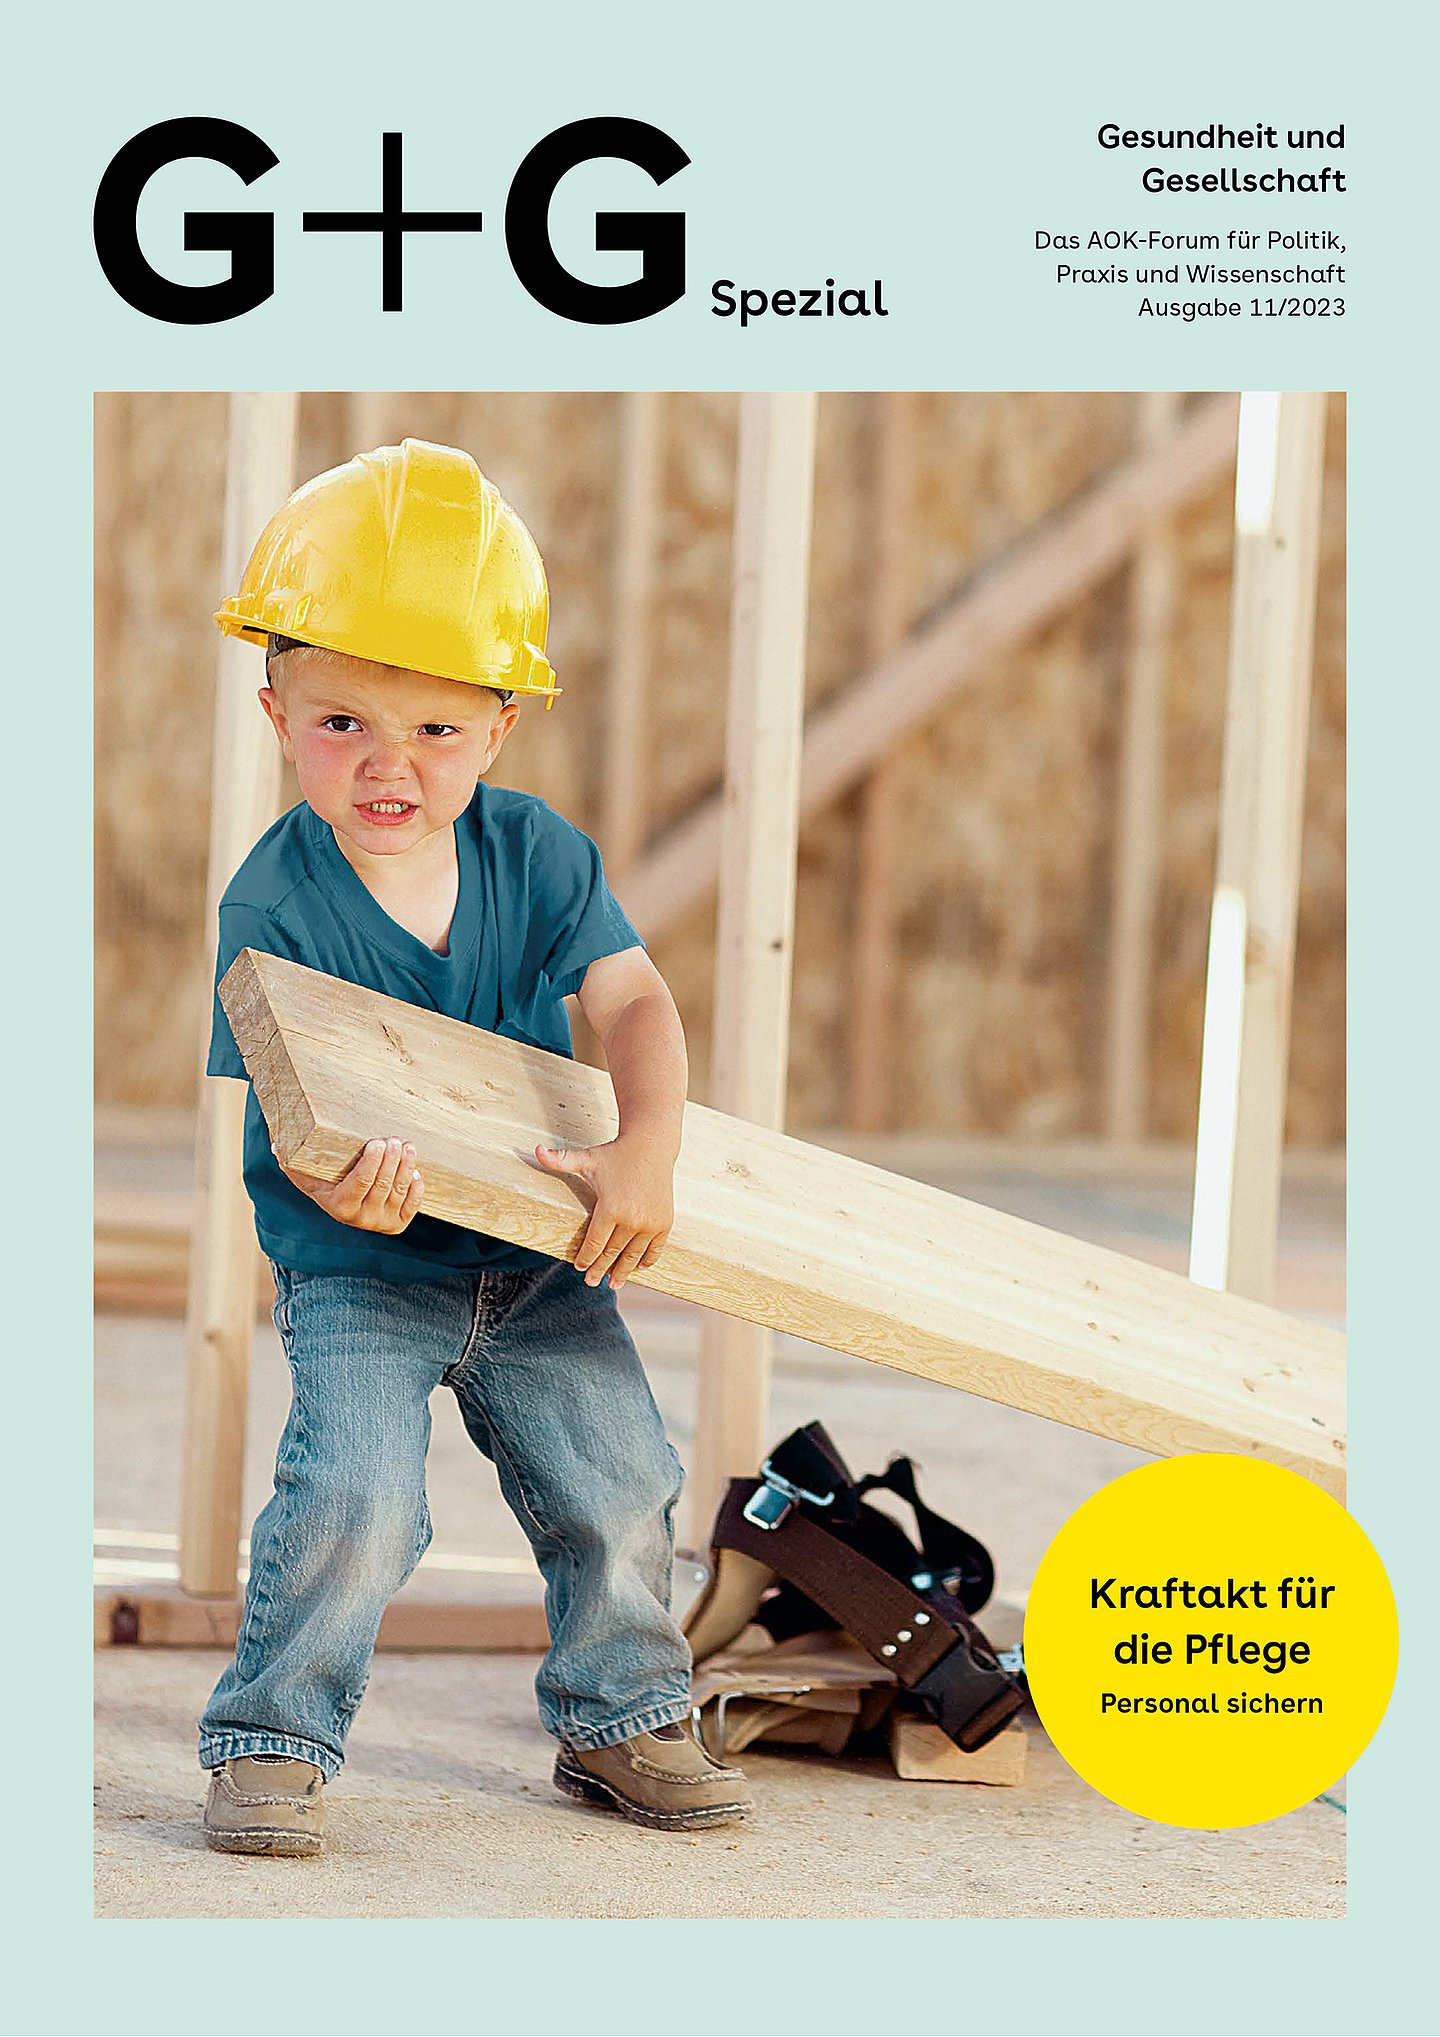 Foto: Ein kleiner Junge mit einem gelben Bauarbeiterhelm zieht eine Holzlatte.